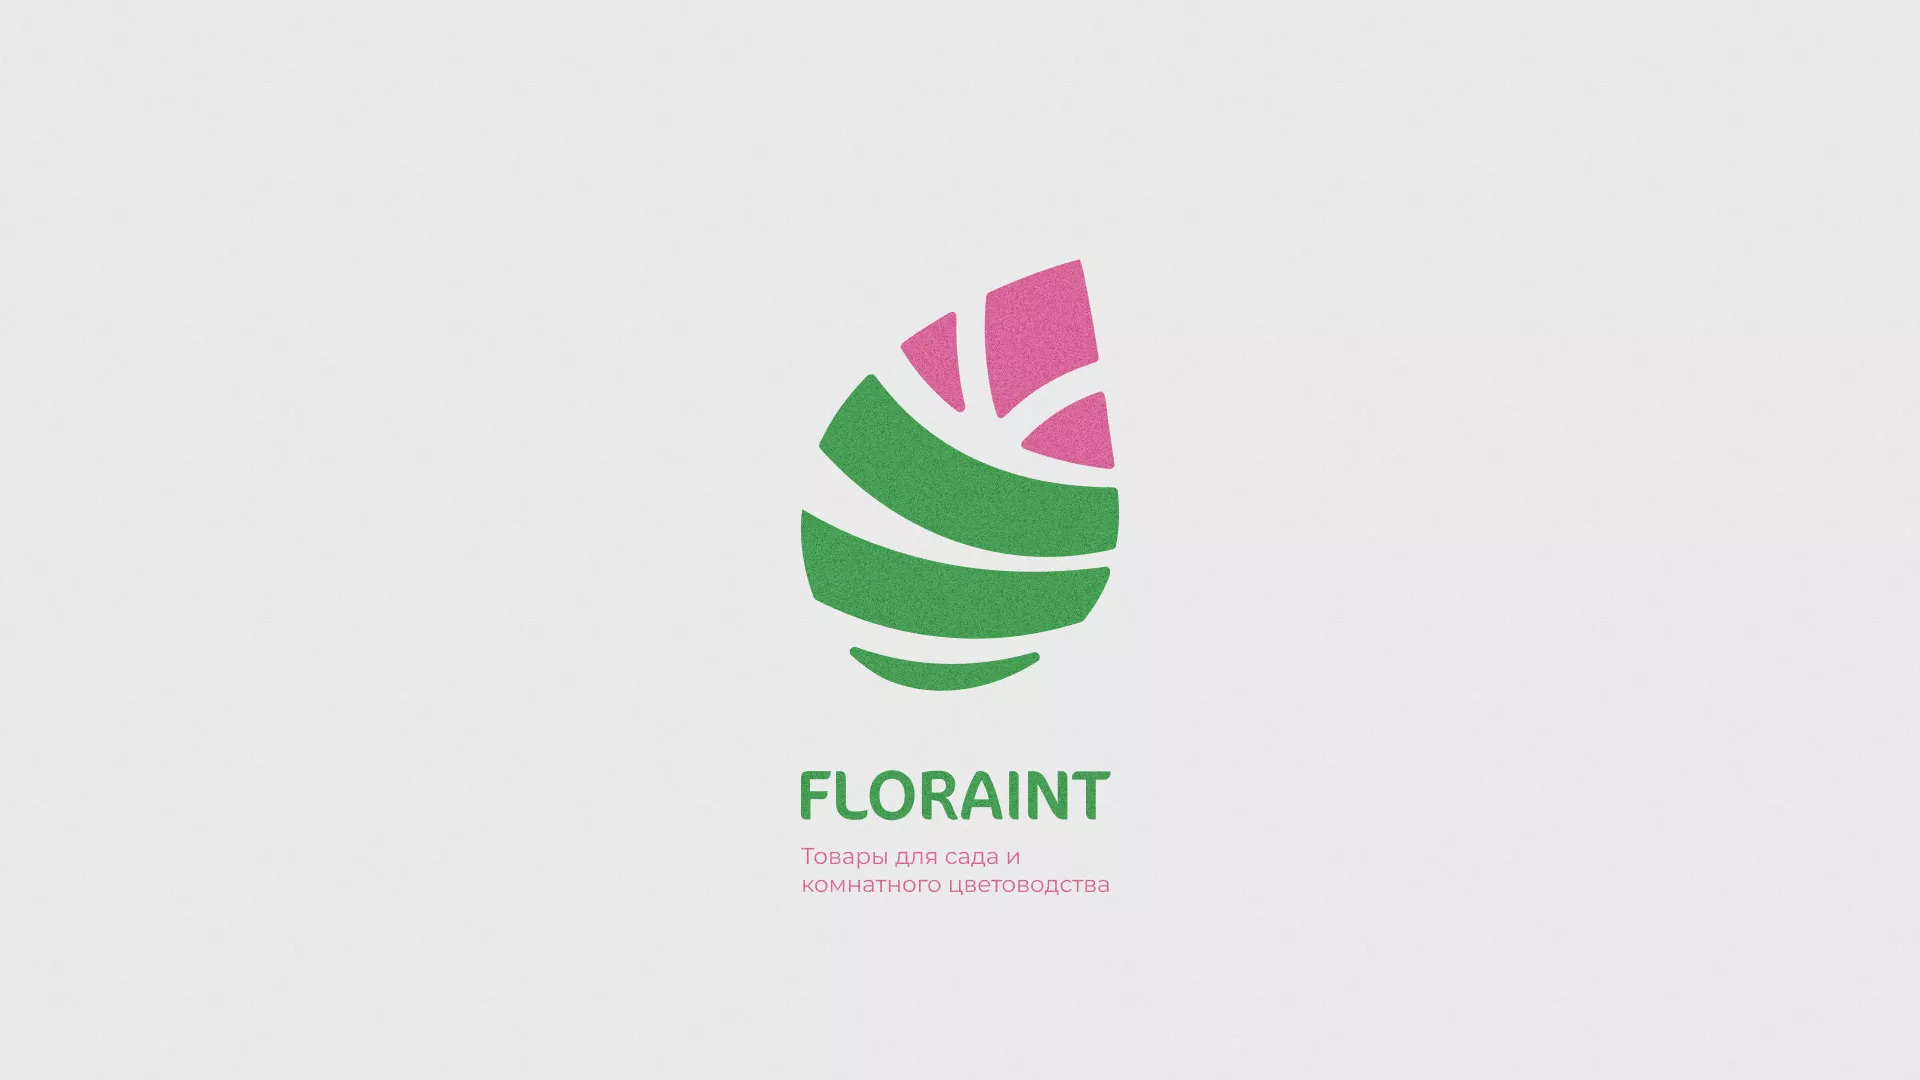 Разработка оформления профиля Instagram для магазина «Floraint» в Острове